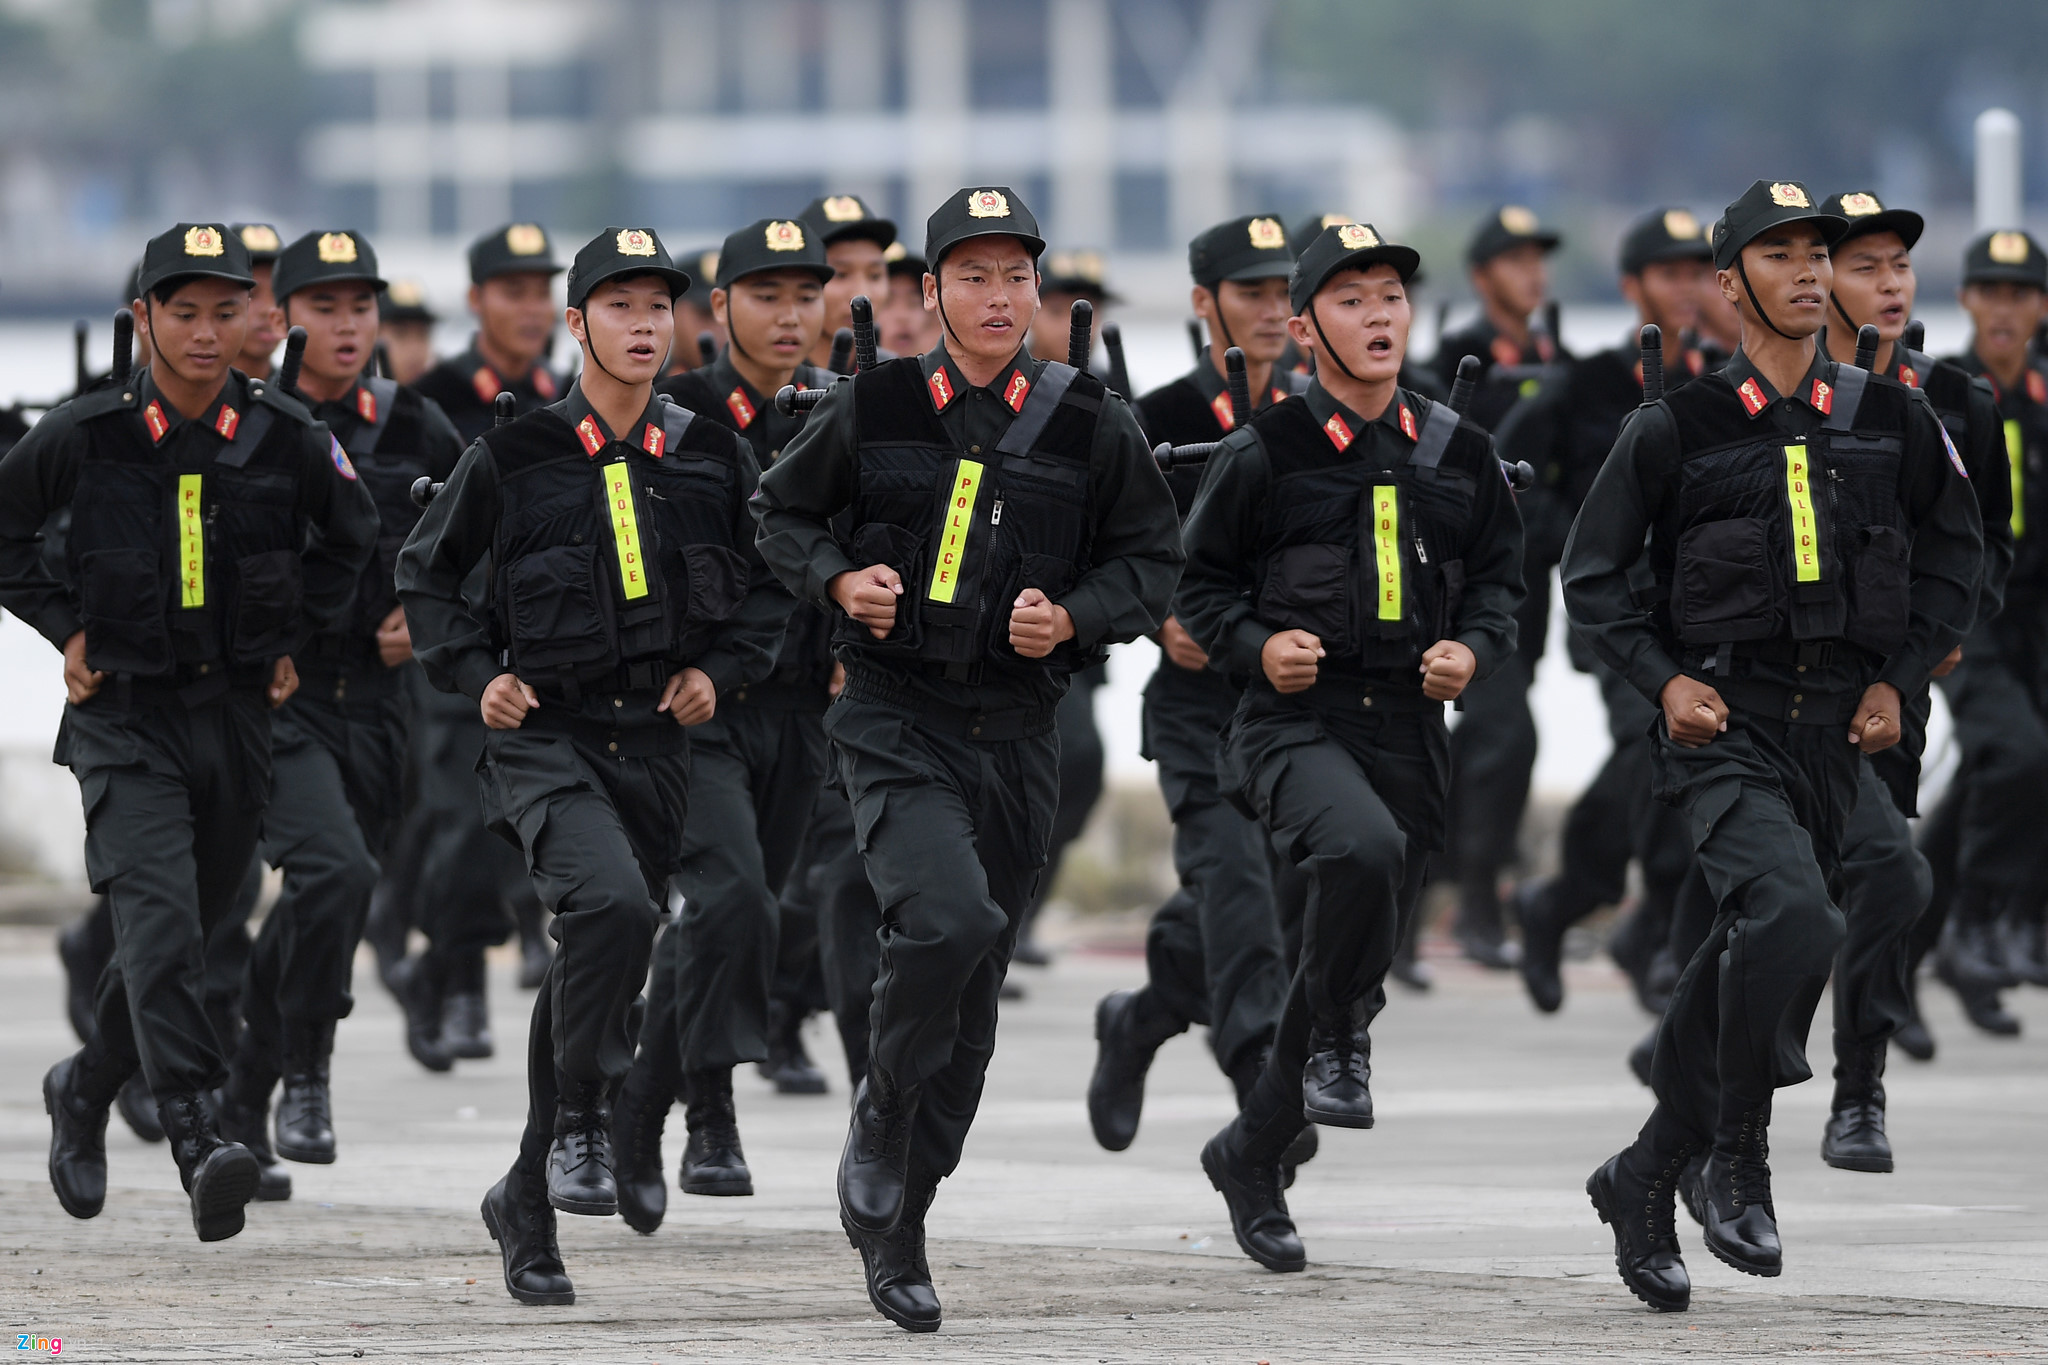 Lực lượng cảnh sát cơ động tập luyện sẵn sàng bảo vệ an toàn tuyệt đối cho Tuần lễ cấp cao APEC 2017. Ảnh: zing